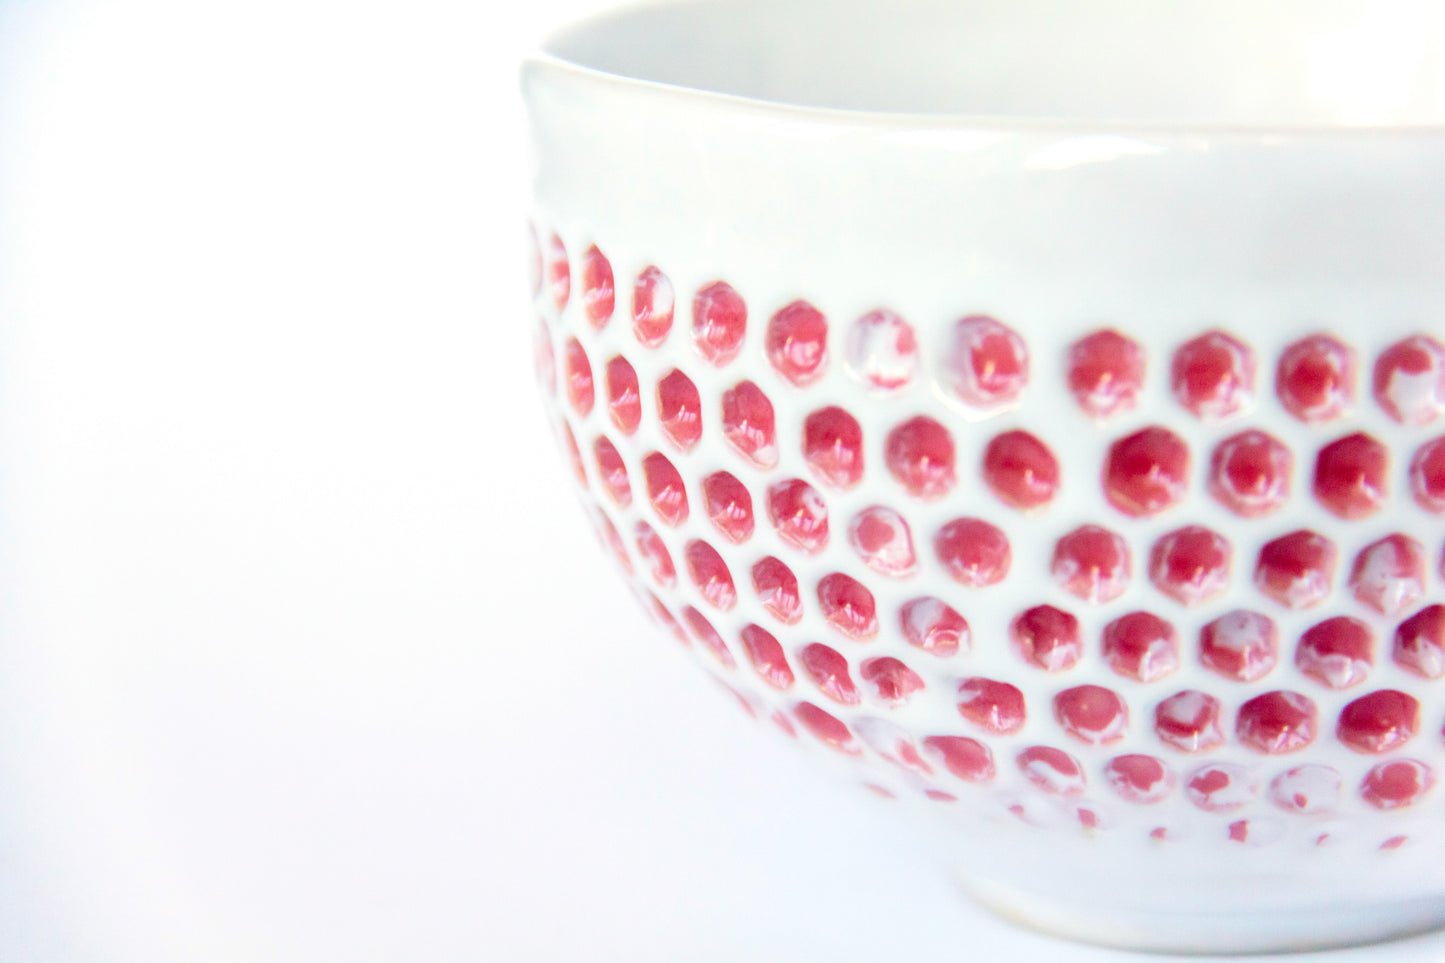 Kubek ceramiczny ze wzorem w kolorze biało-różowym